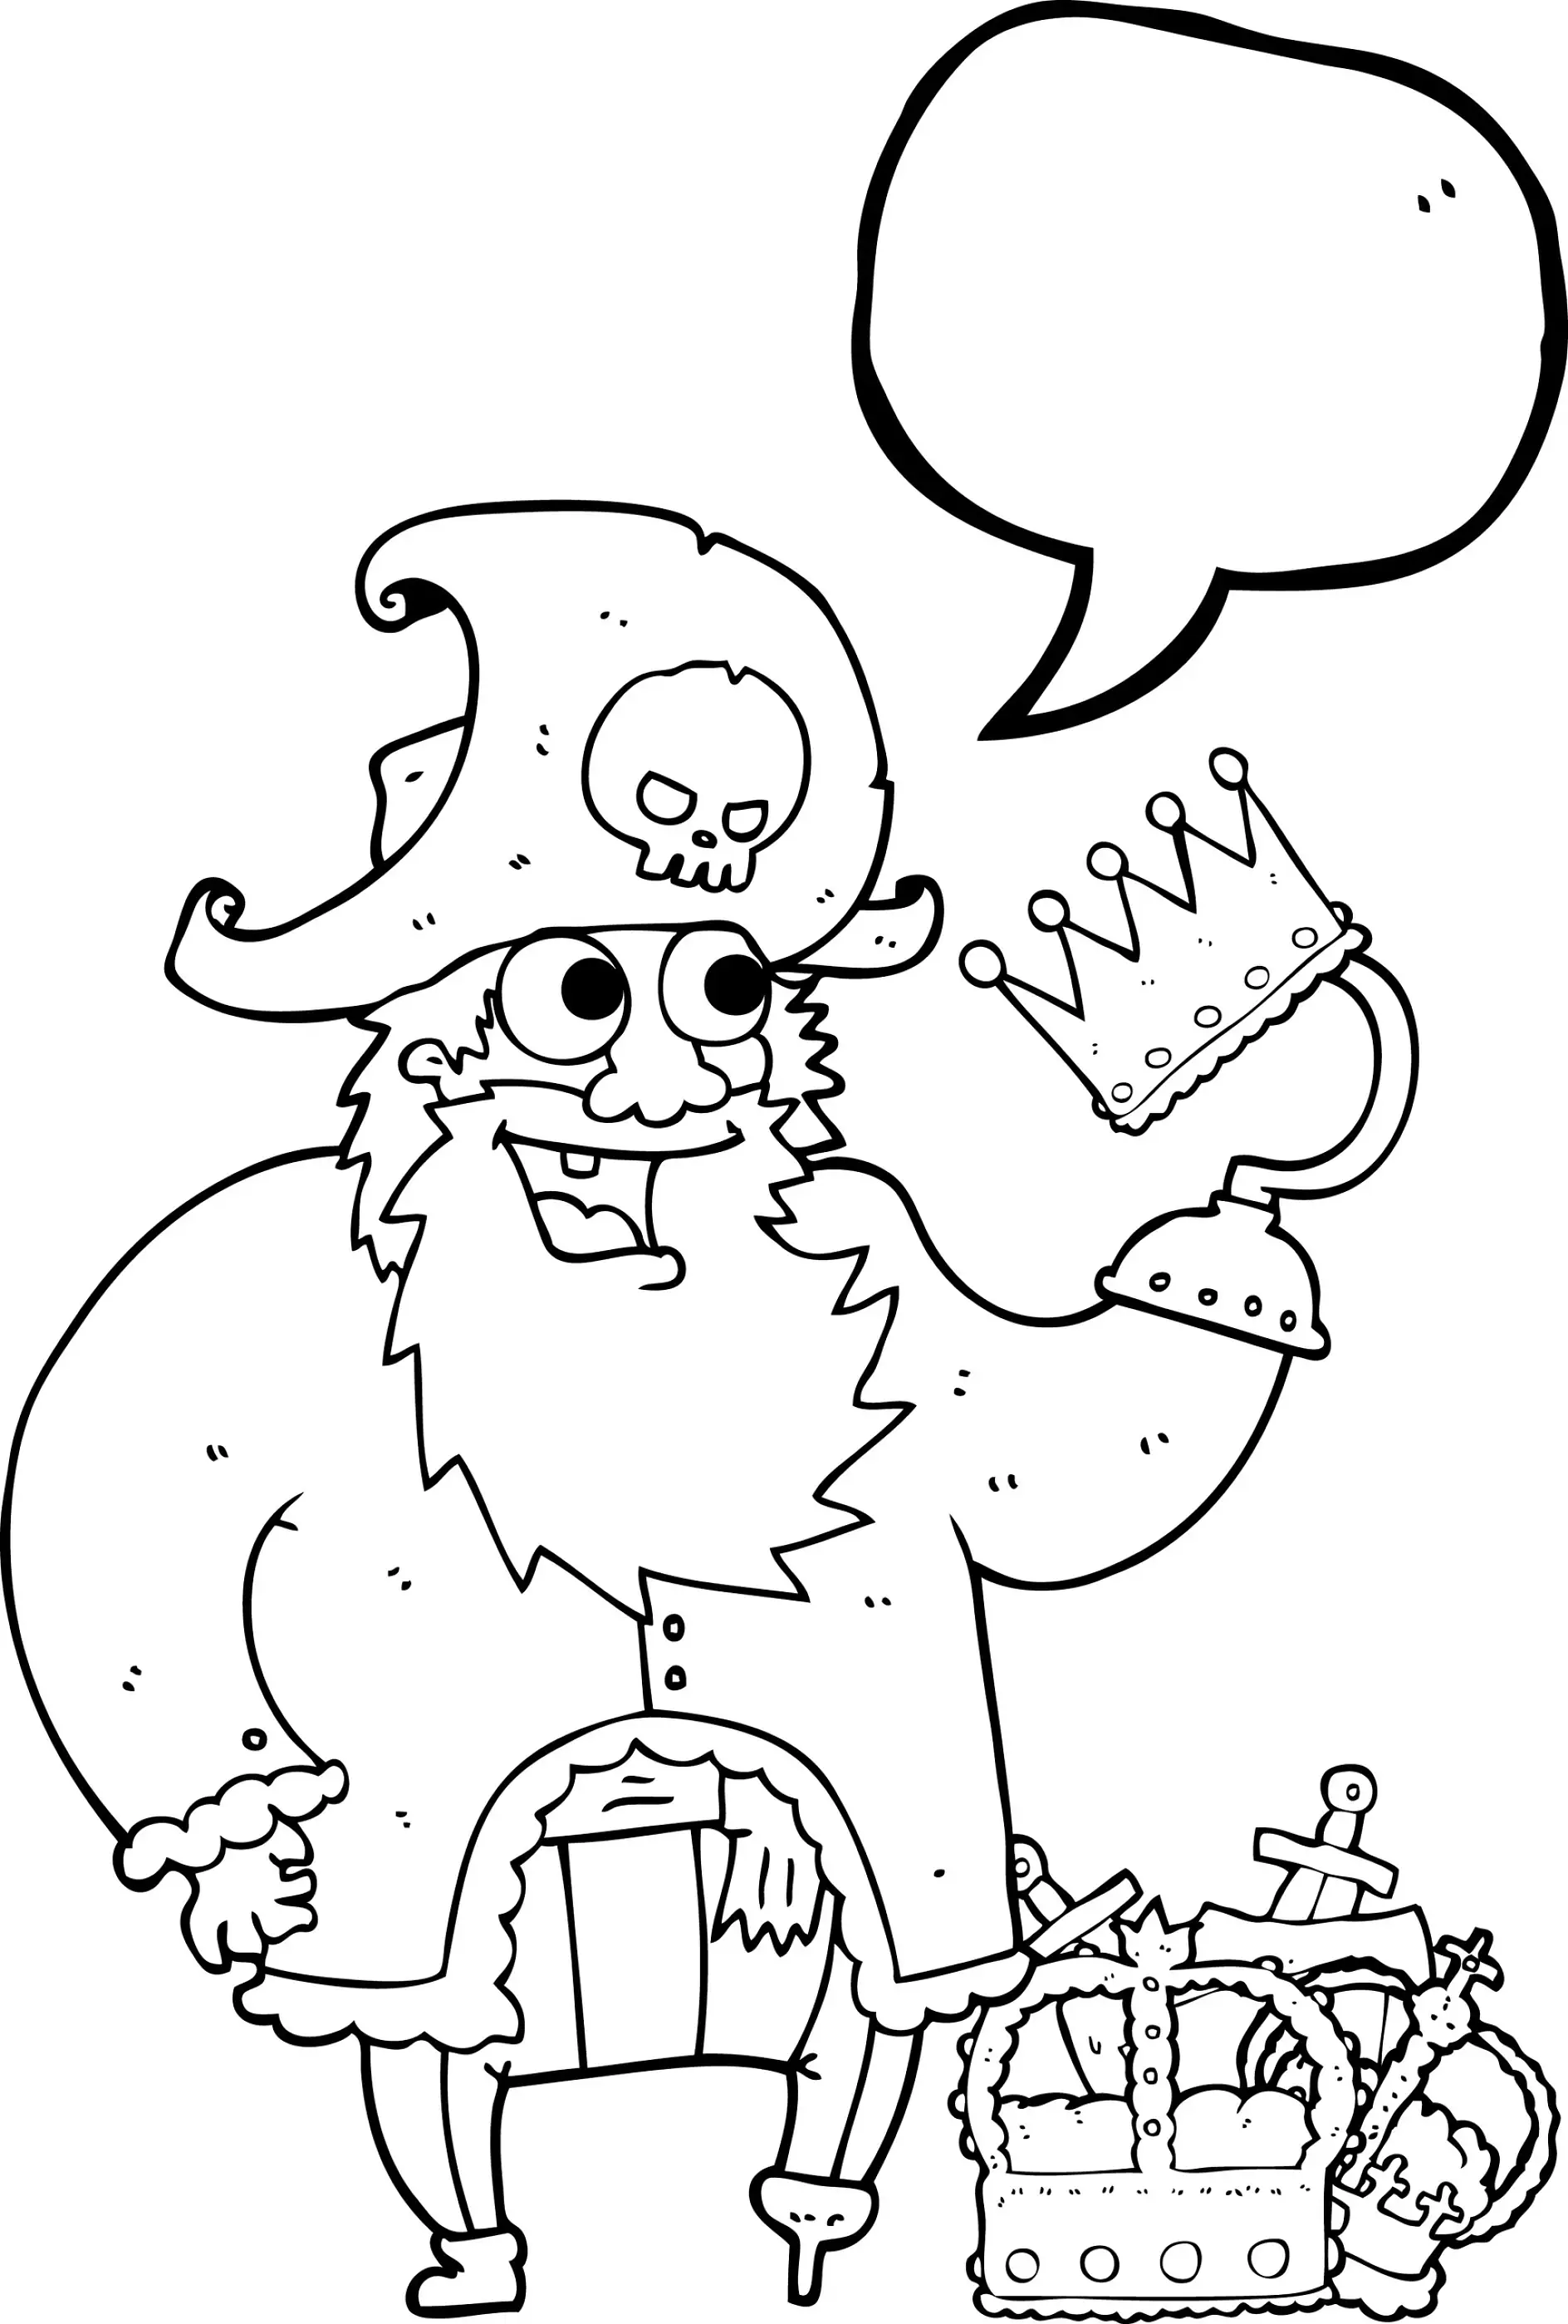 Ausmalbild Pirat mit Krone und Schatzkiste hält Rede